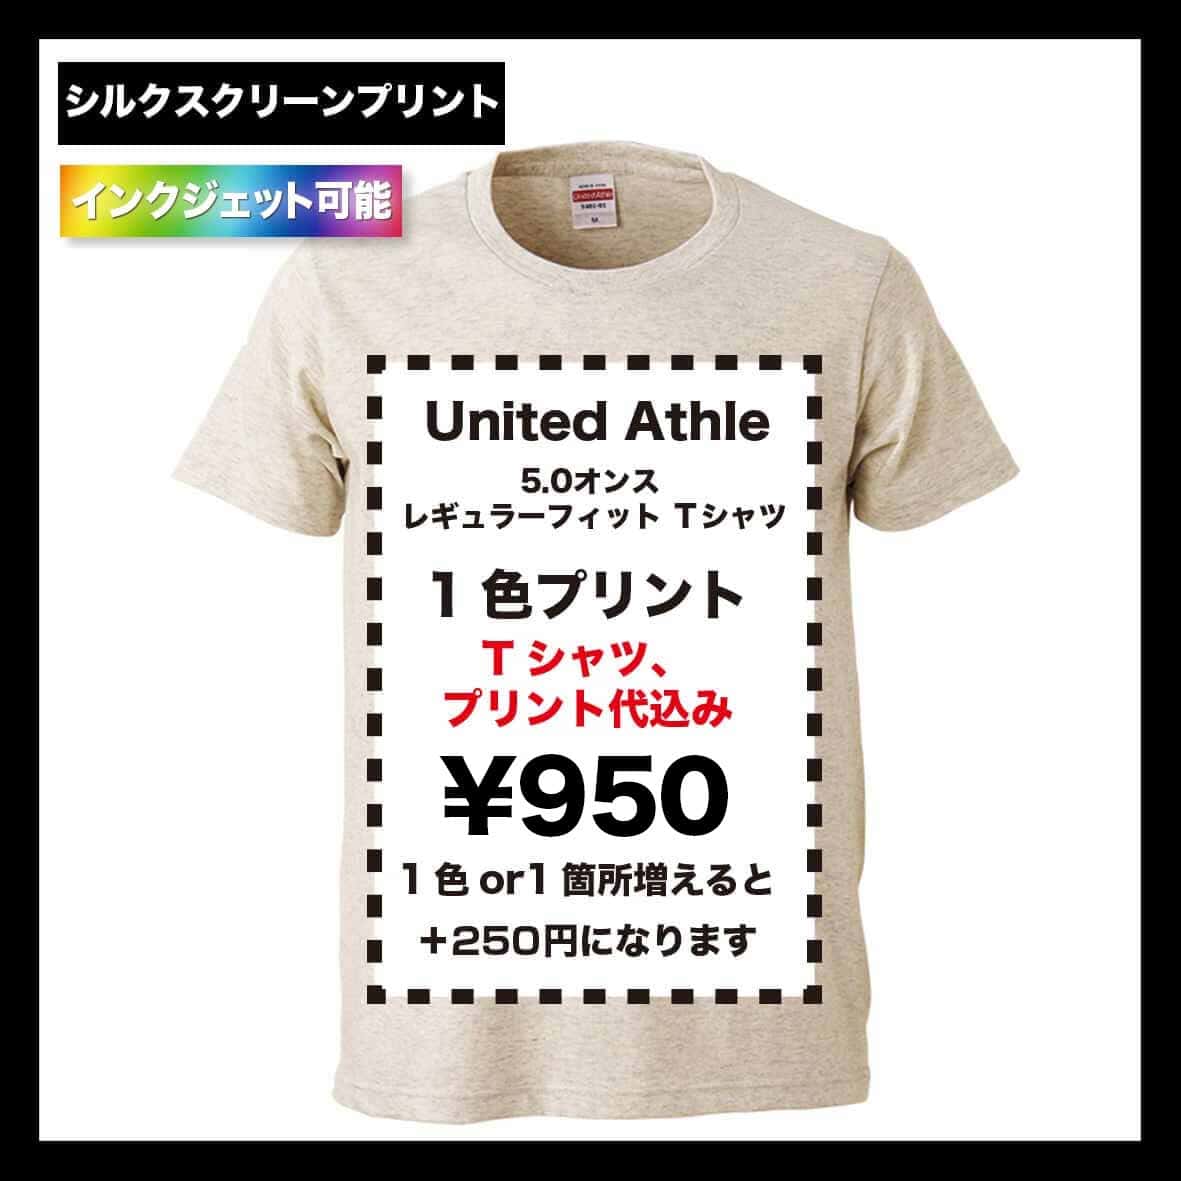 United Athle ユナイテッドアスレ 5.0 oz レギュラーフィットTシャツ (品番5401-01)